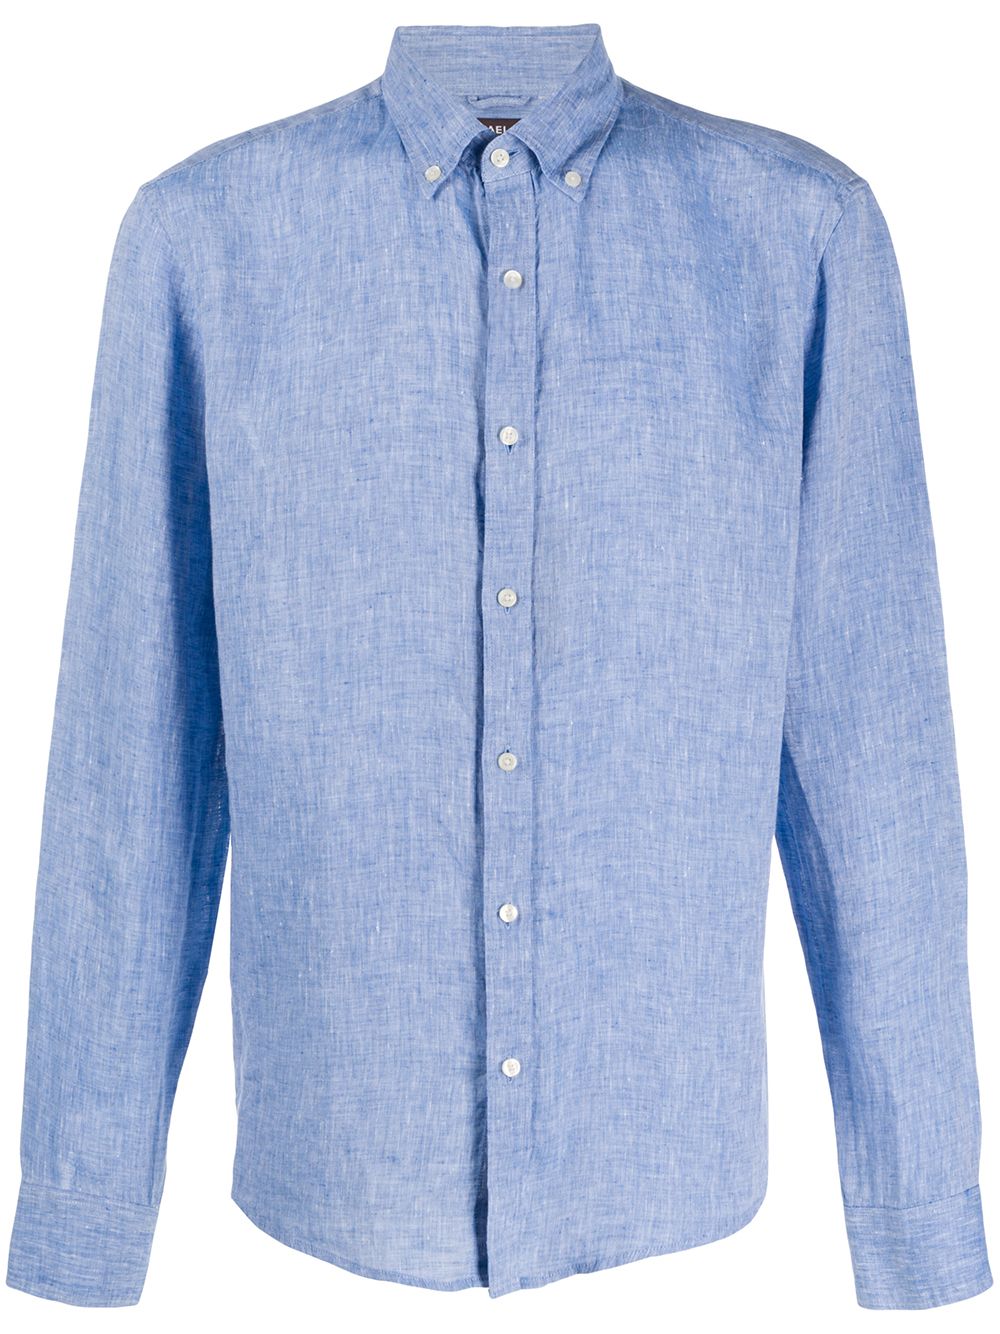 Michael Kors Men's Light Blue Linen Shirt | ModeSens